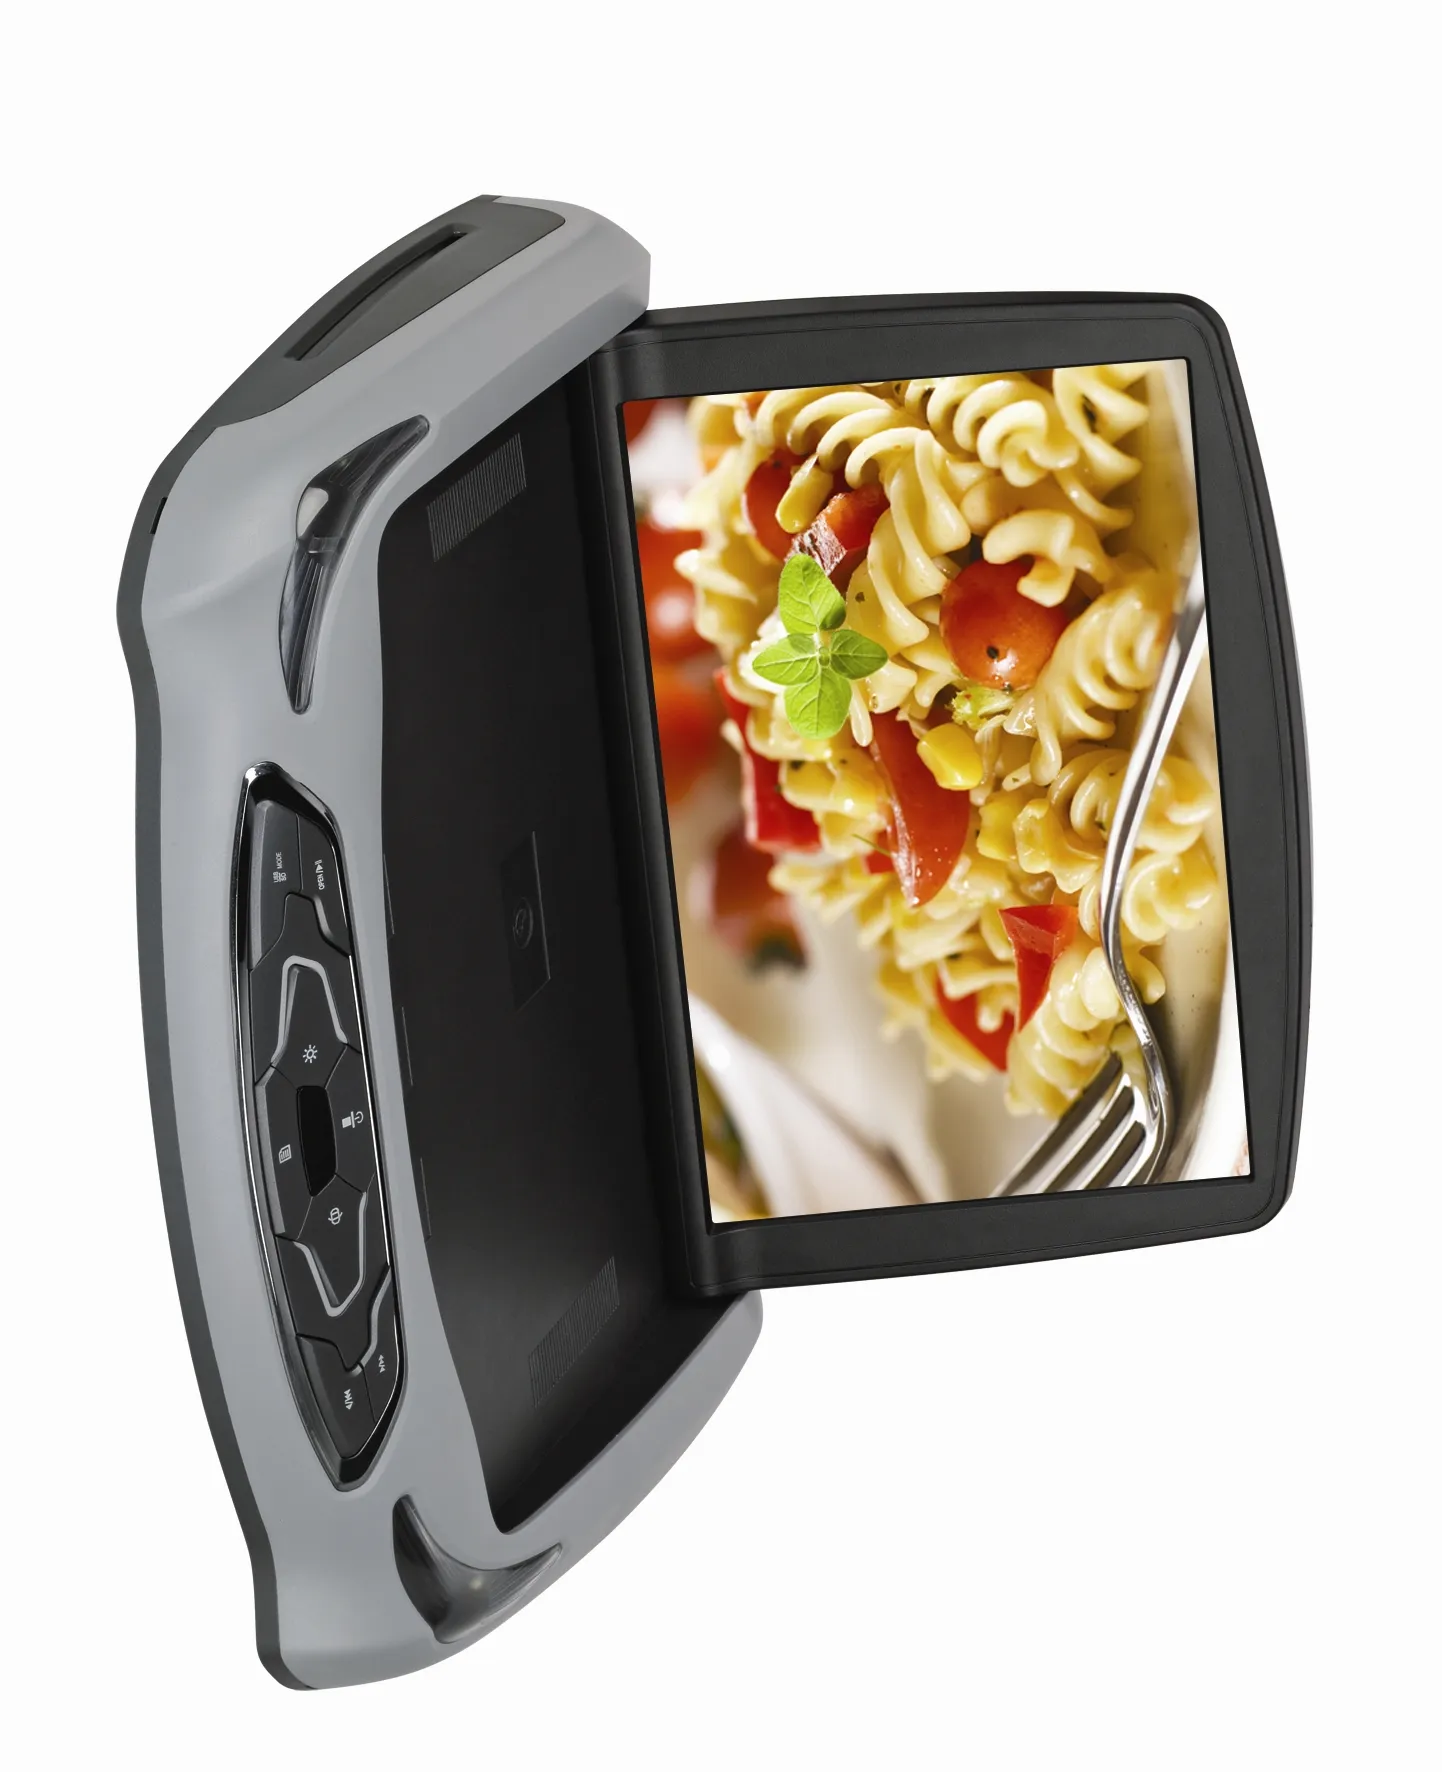 Flip Omlaag Auto Monitor All-In-Een 10 Inch Auto Dvd-speler Voor Auto Entertainment Op Het Aspect van Video Radio En Tv